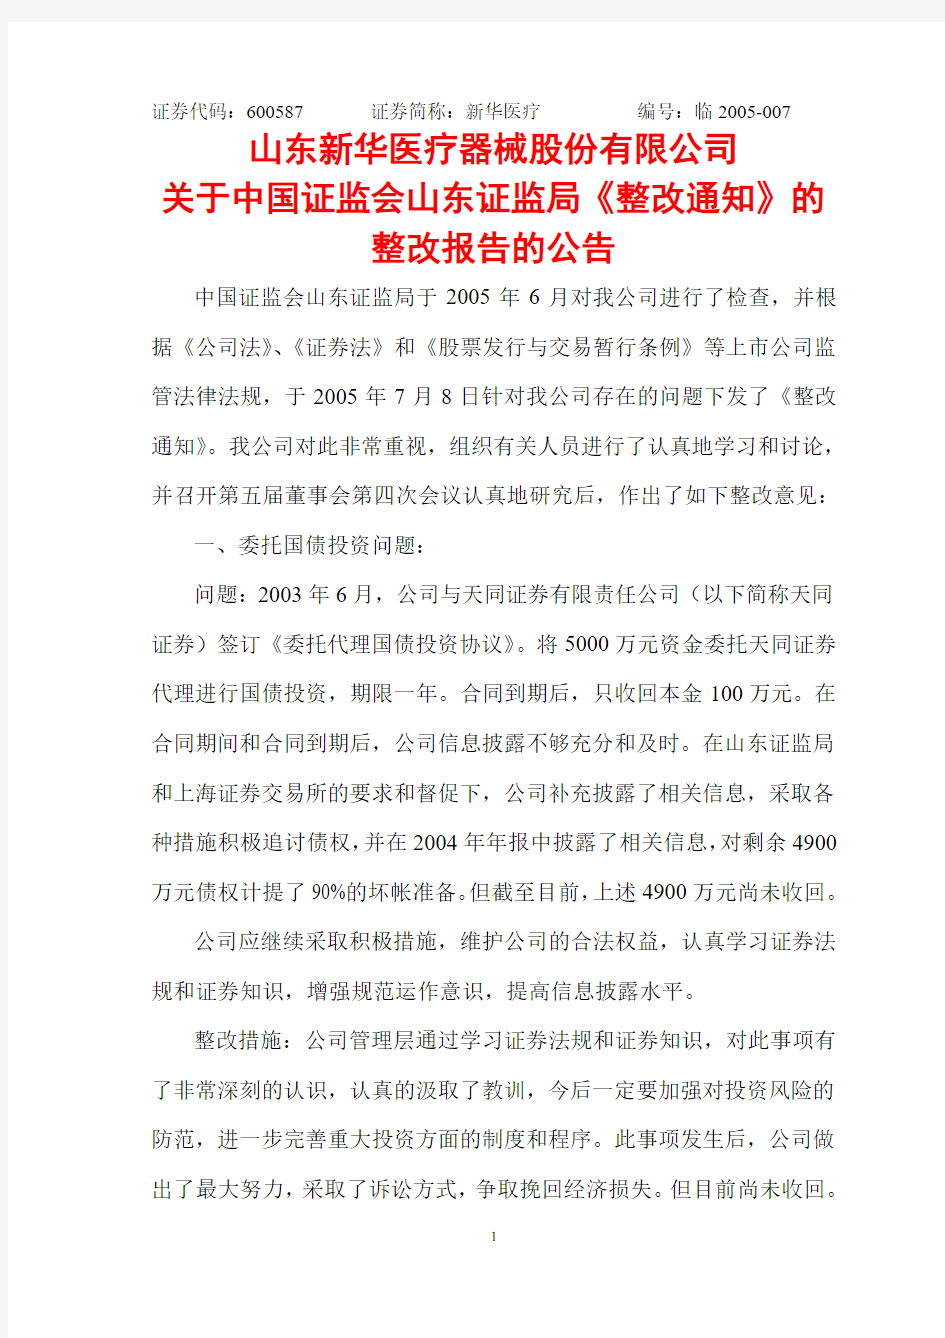 关于中国证监会山东证监局《整改通知》的整改报告的公告